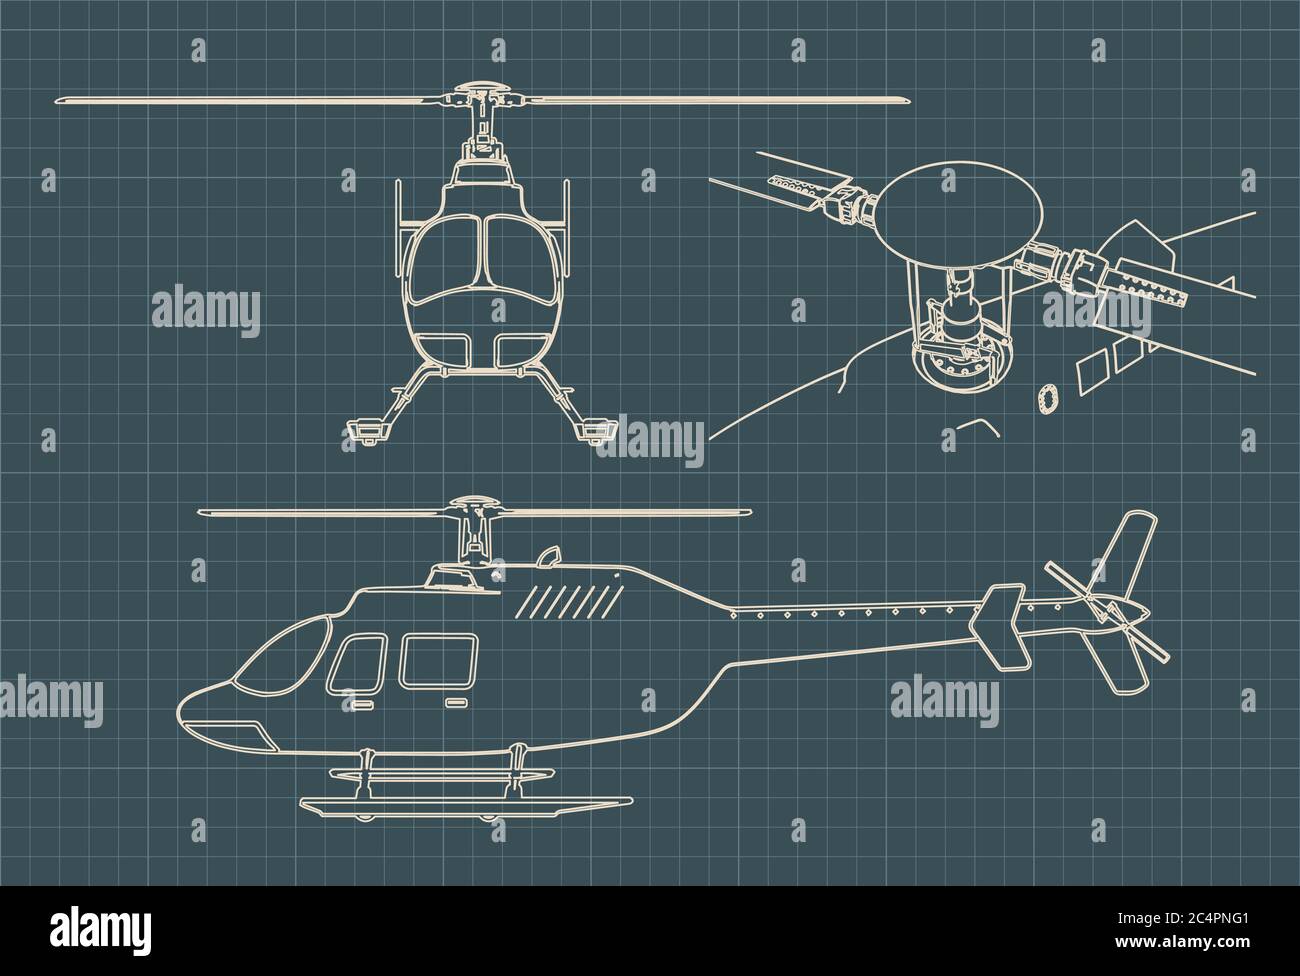 Illustration vectorielle stylisée de dessins d'un hélicoptère civil Illustration de Vecteur